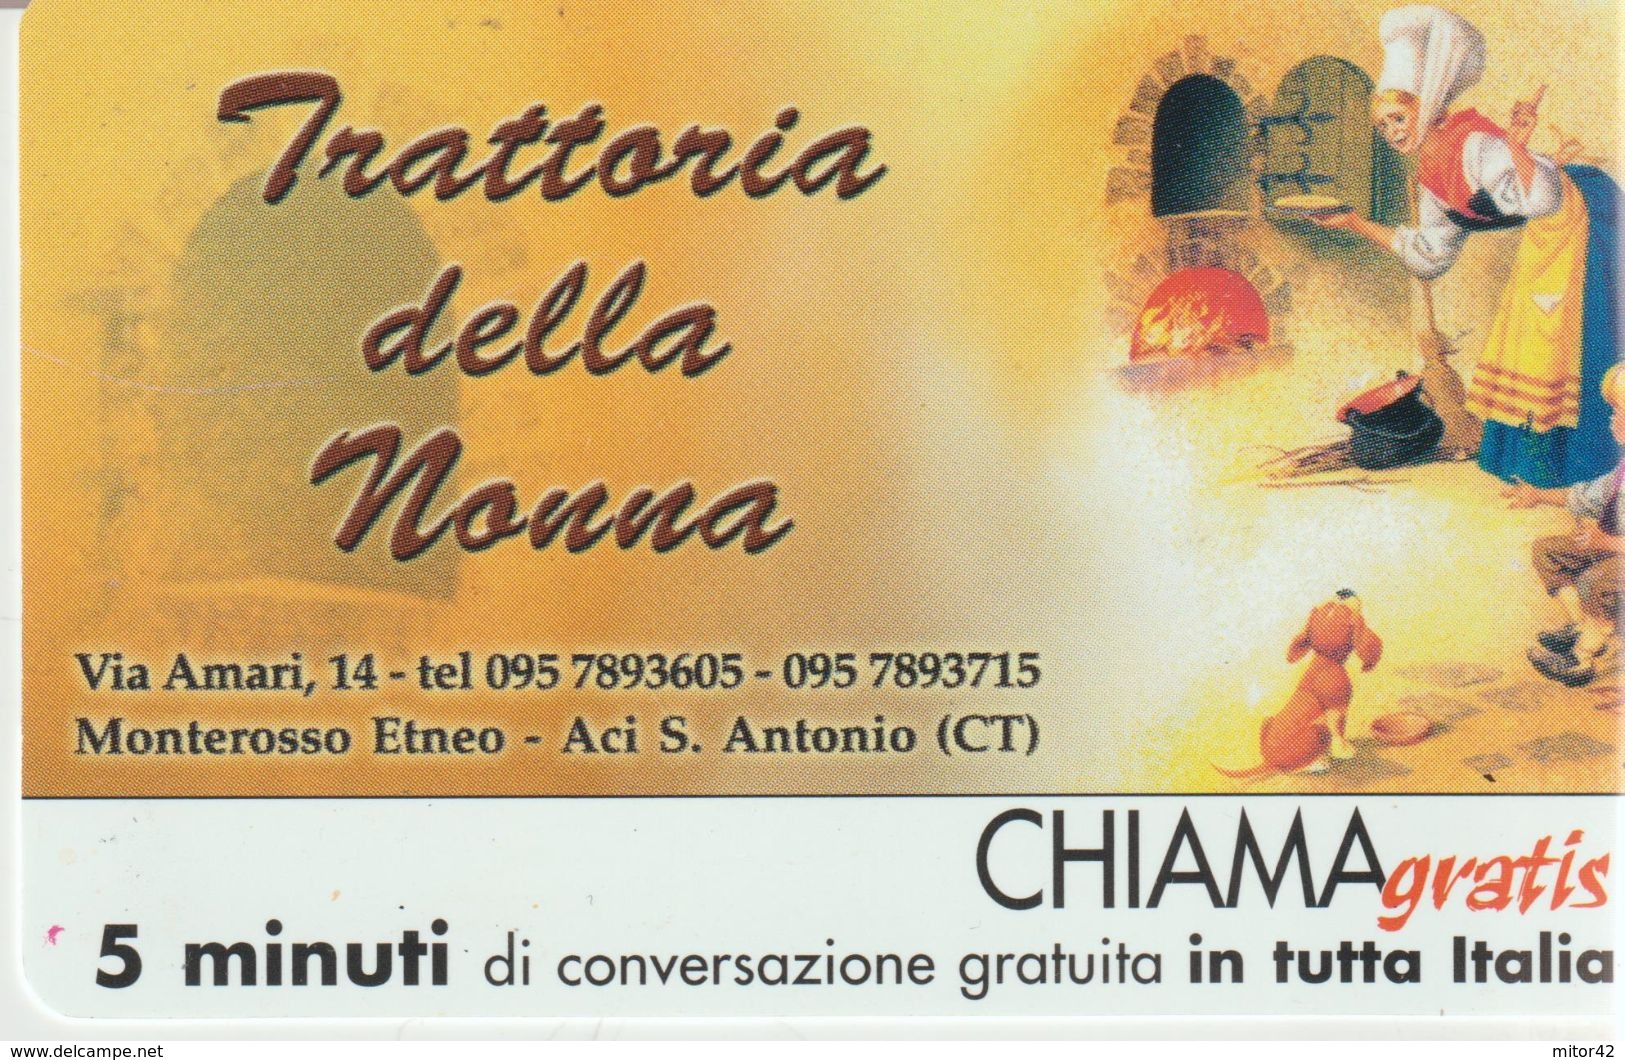 60-Chiama-gratis-Trattoria Della Nonna-Monterosso Etneo-Aci S.Antonio-Catania-Nuova - Special Uses